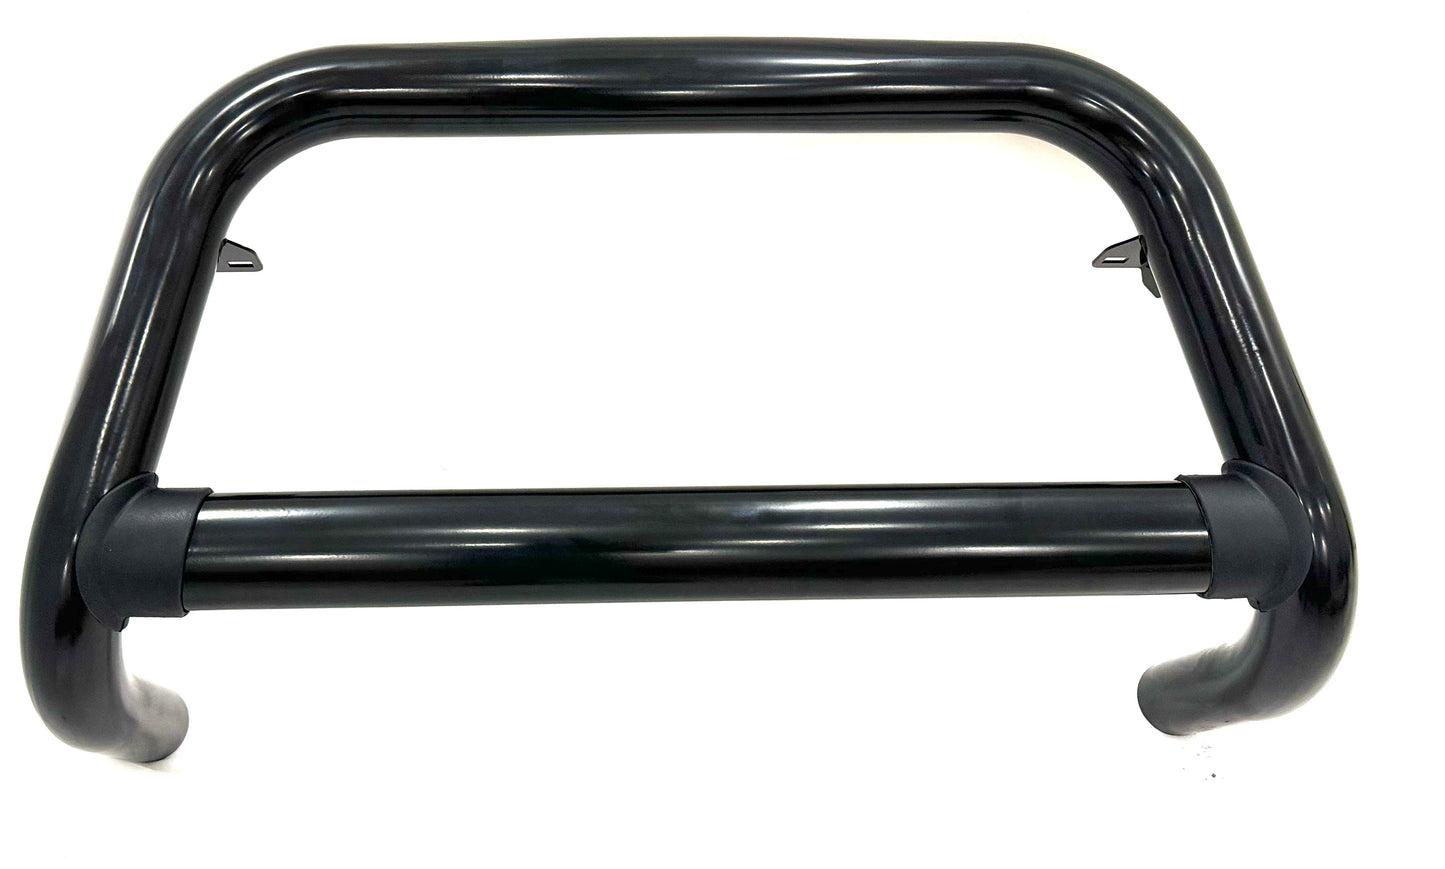 Isuzu D-Max black nudge bar 2012-2021